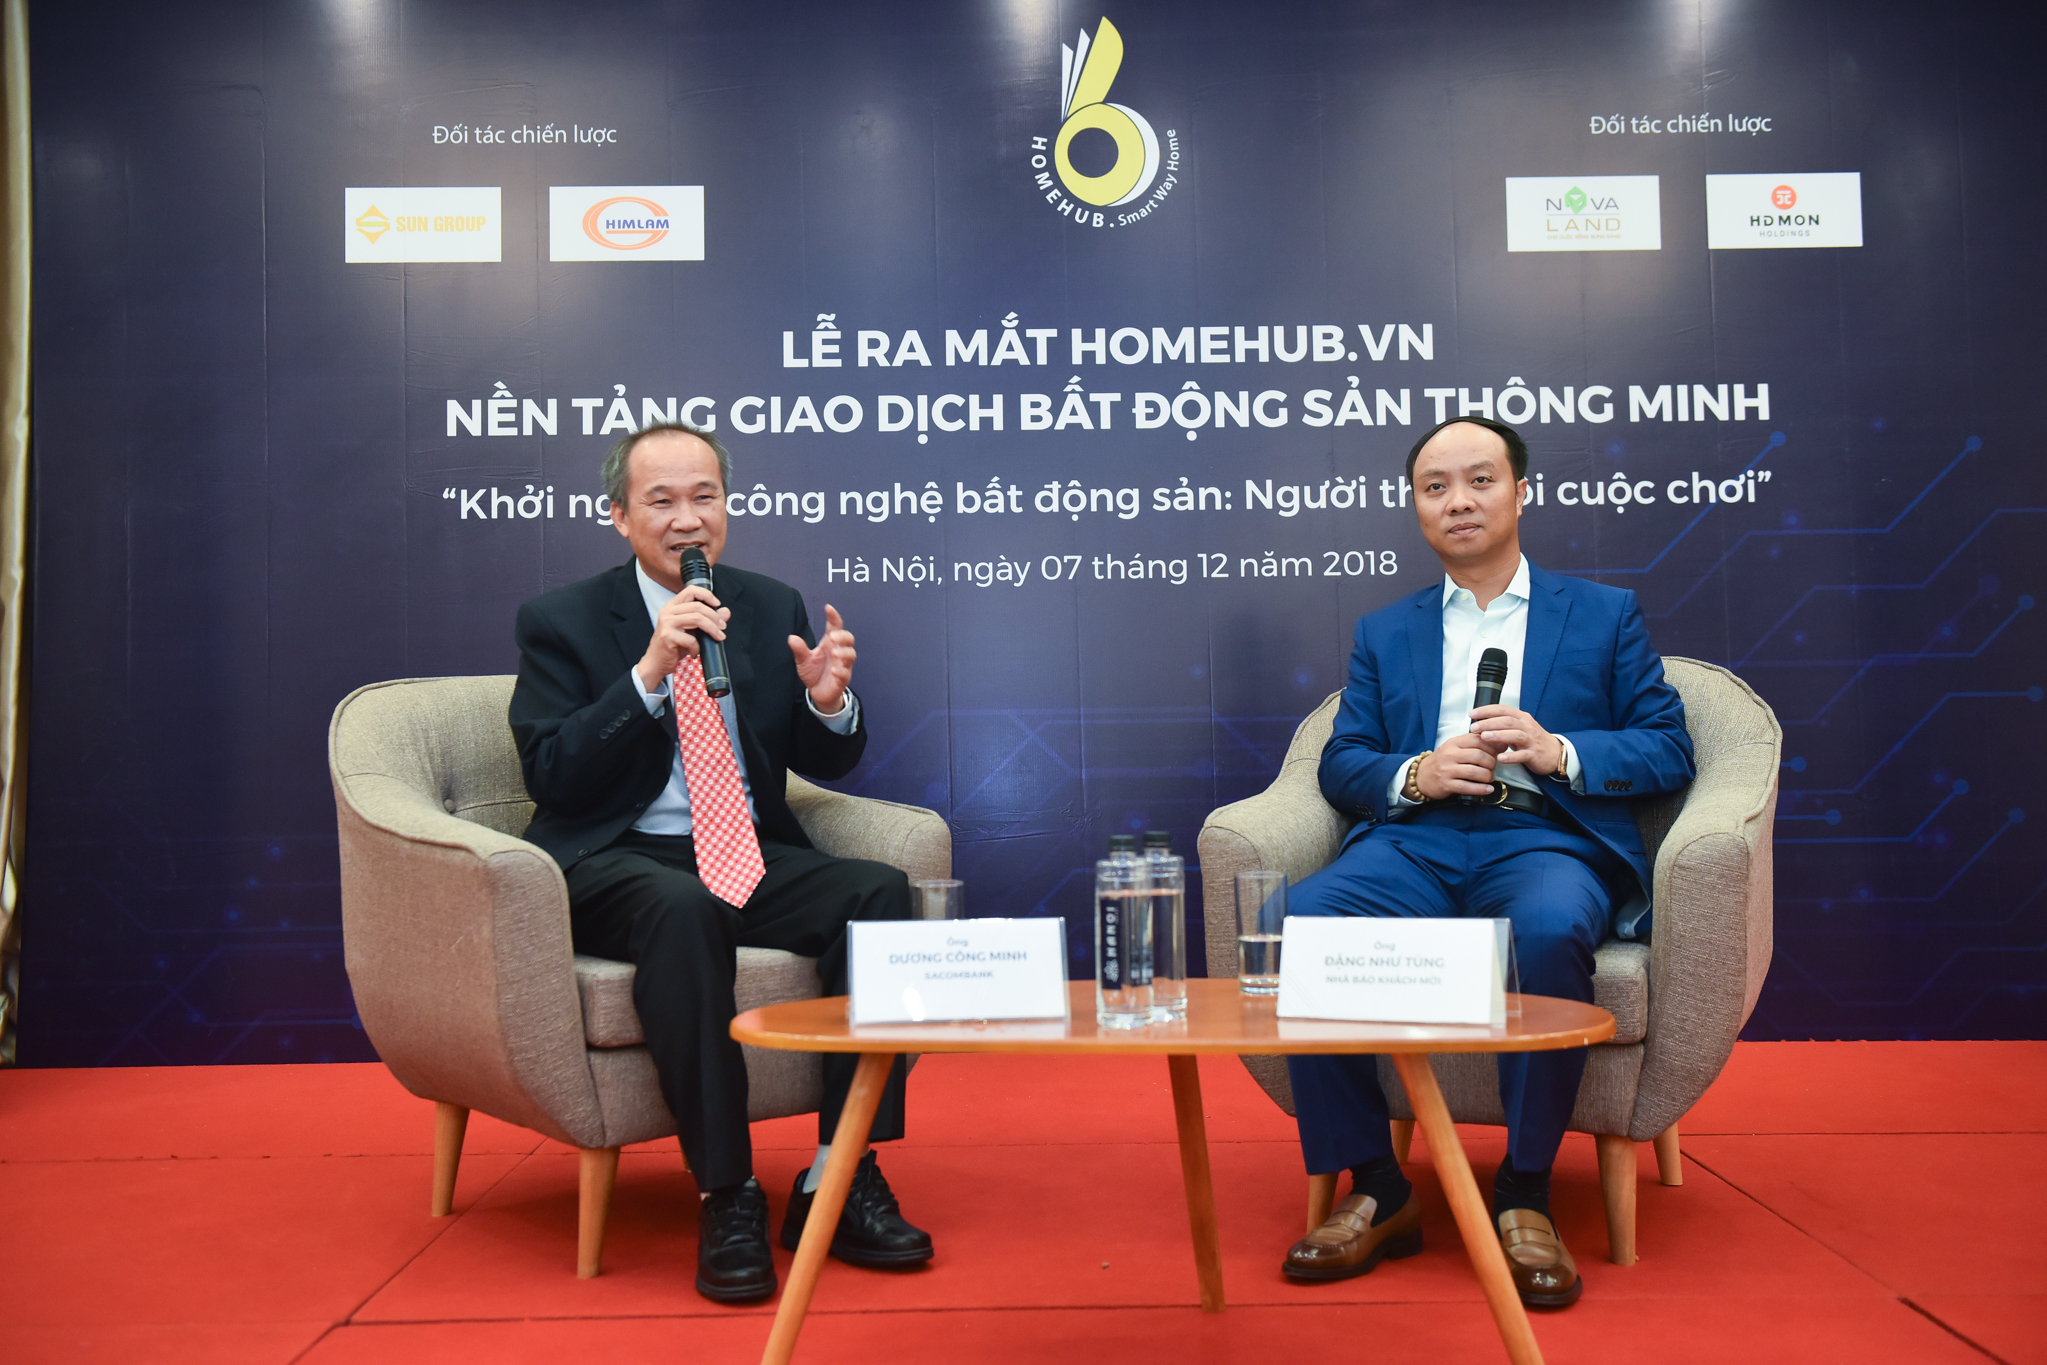 HomeHub.vn – nền tảng giao dịch bất động sản thông minh ra mắt 